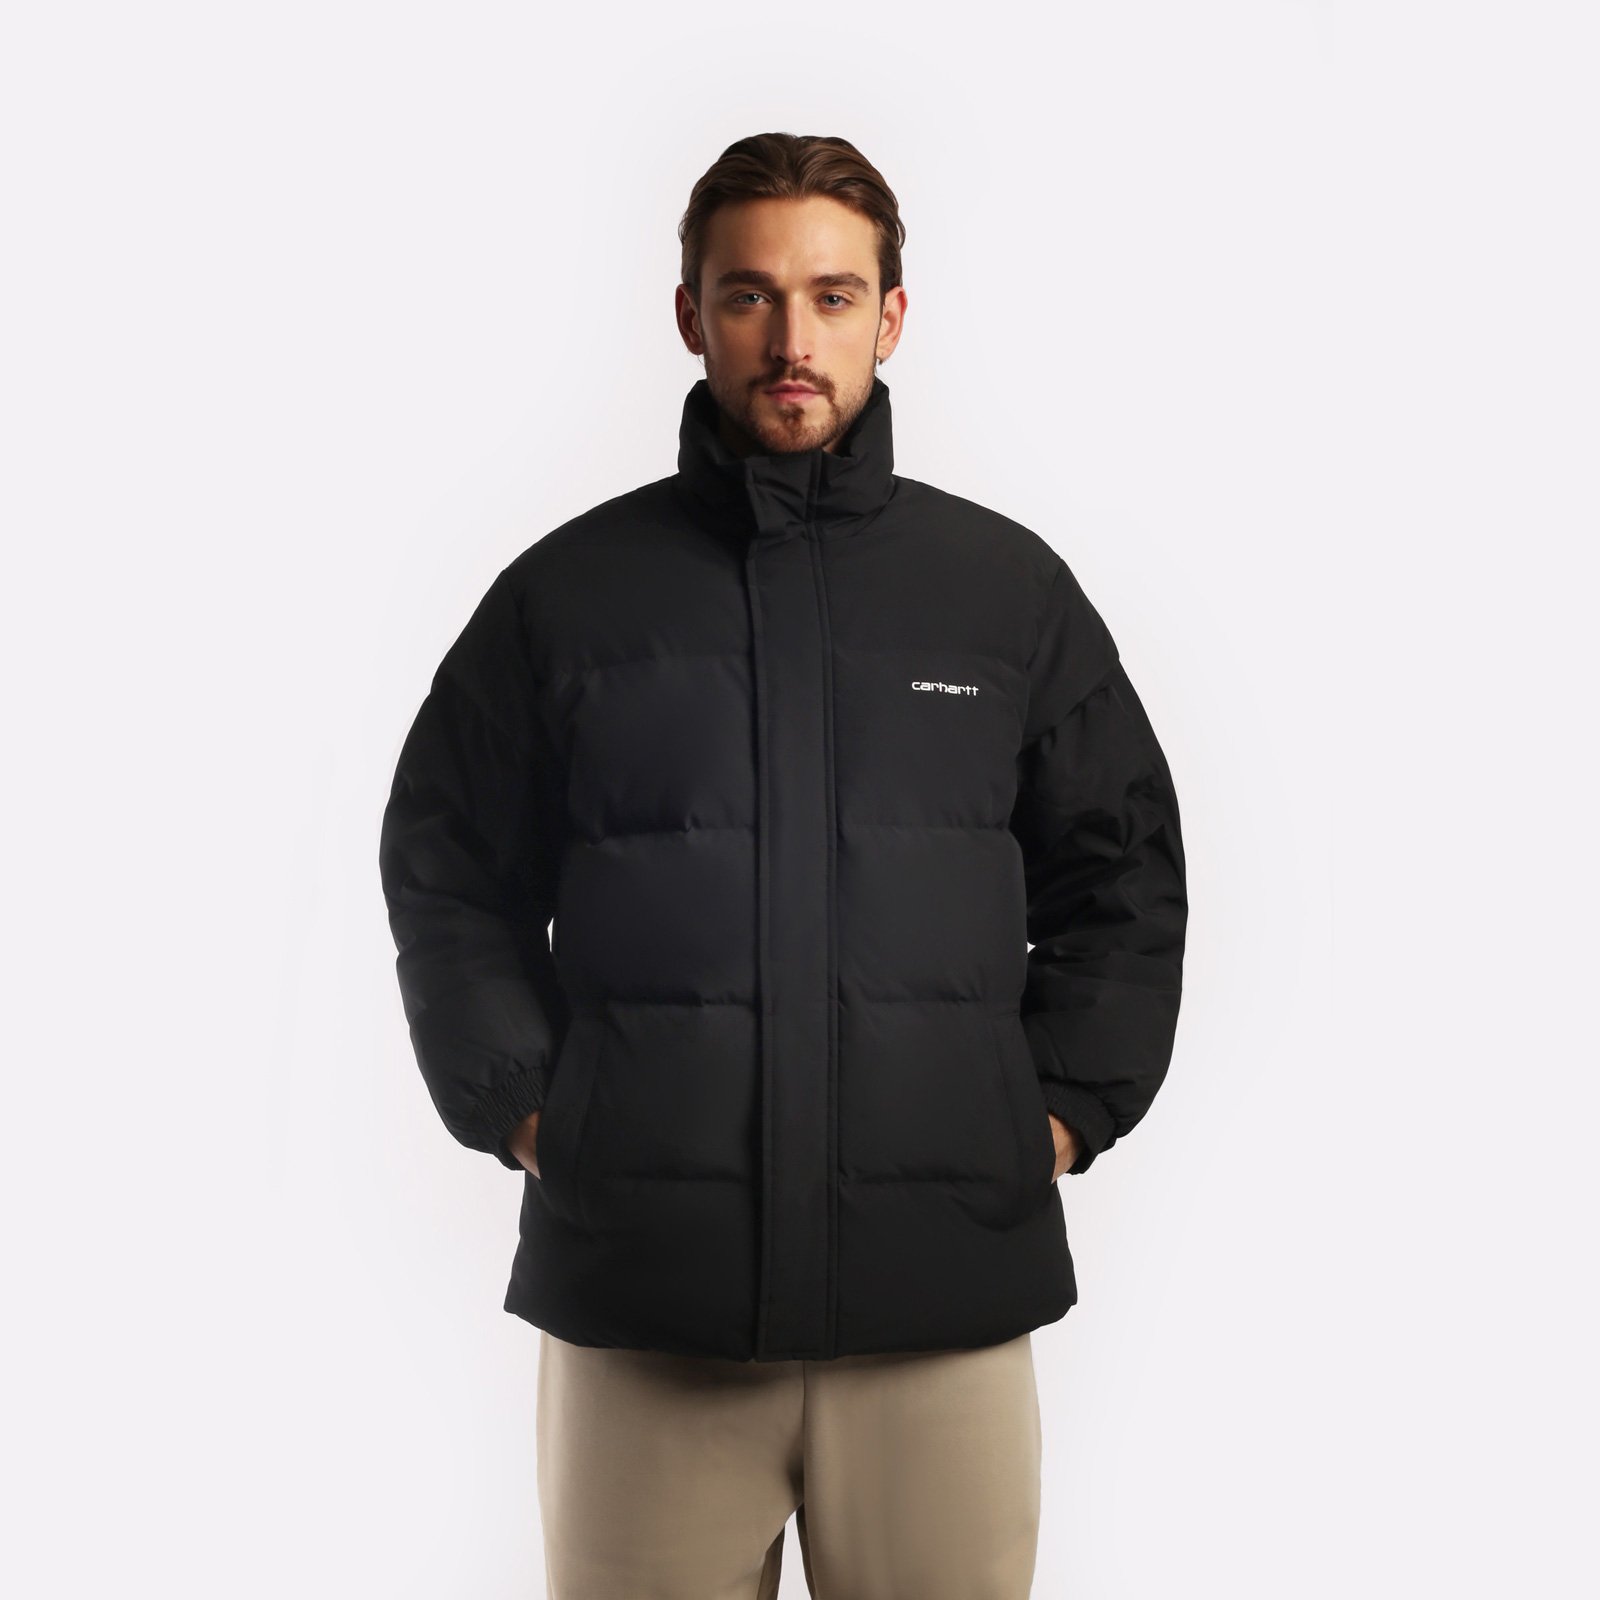 мужская черная куртка Carhartt WIP Danville Jacket I029450-black/wht - цена, описание, фото 1